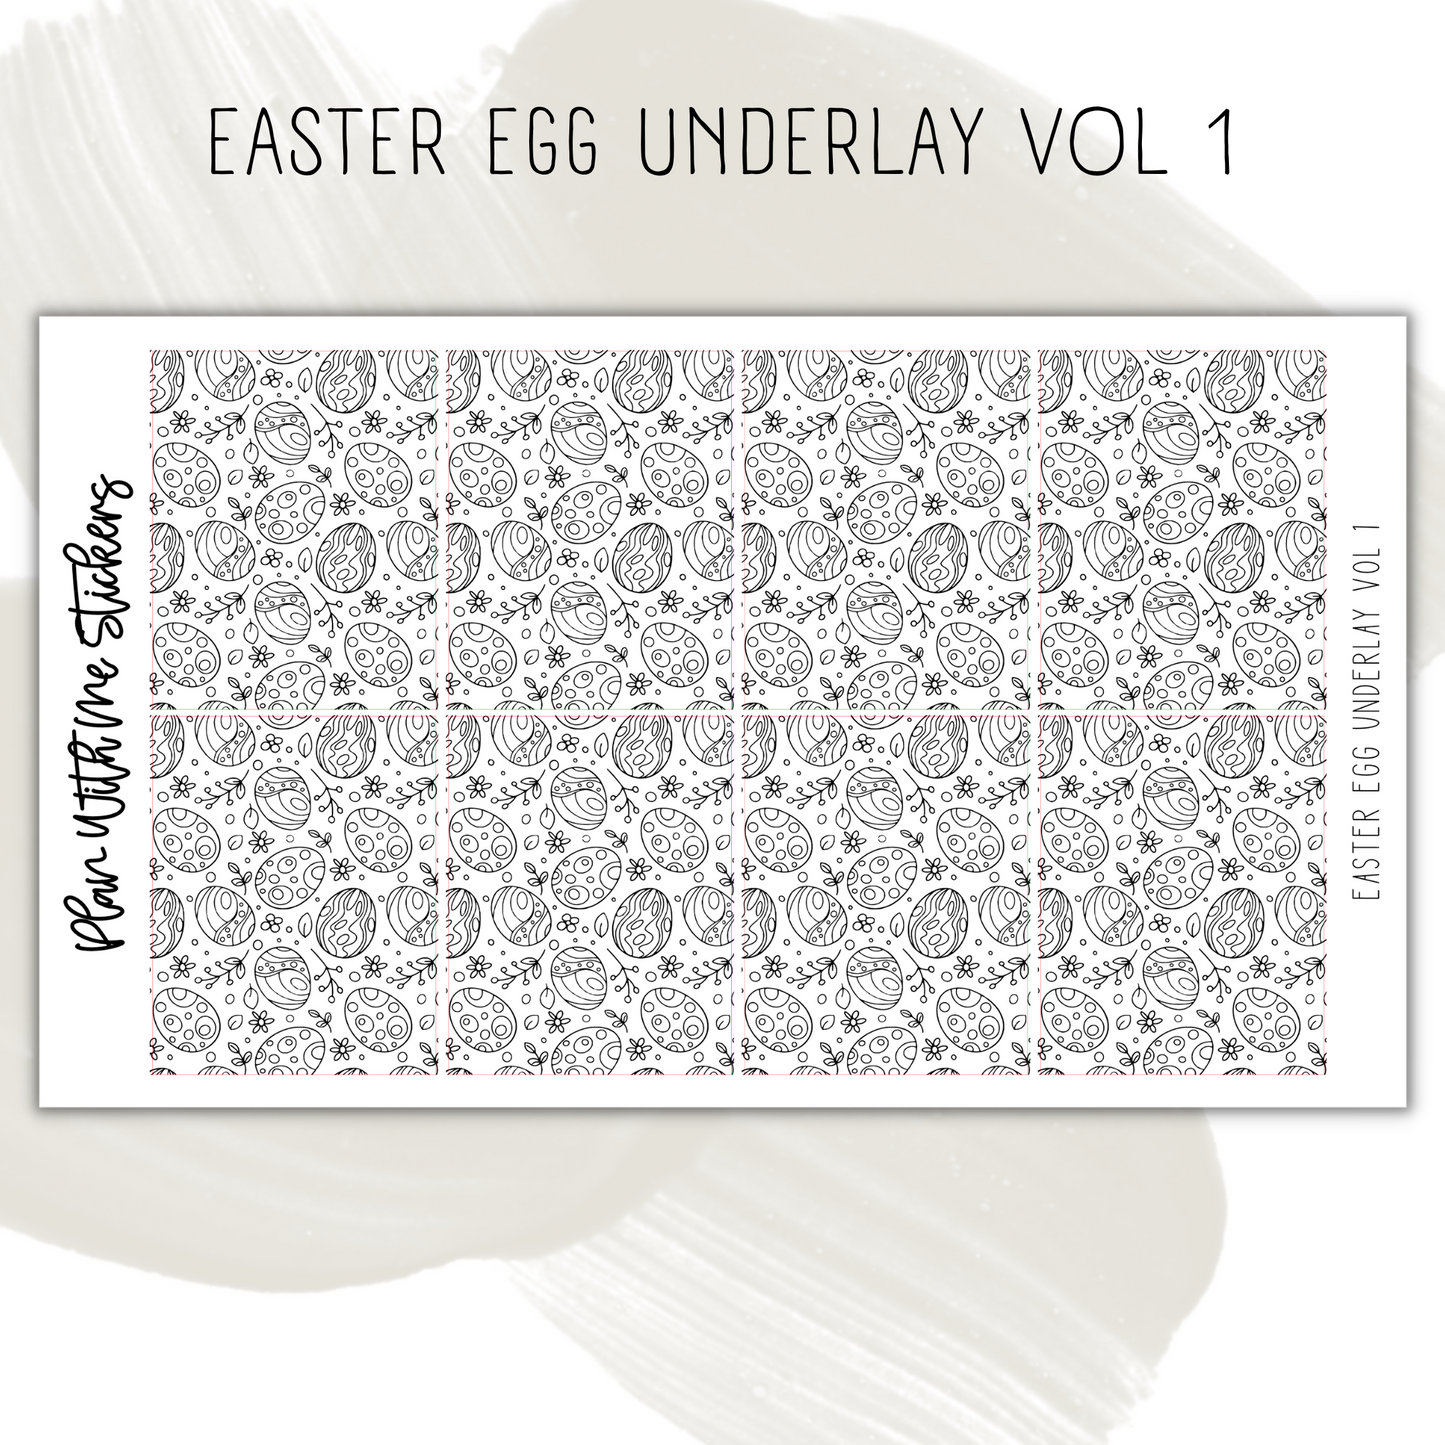 Easter Egg Underlay Vol 1